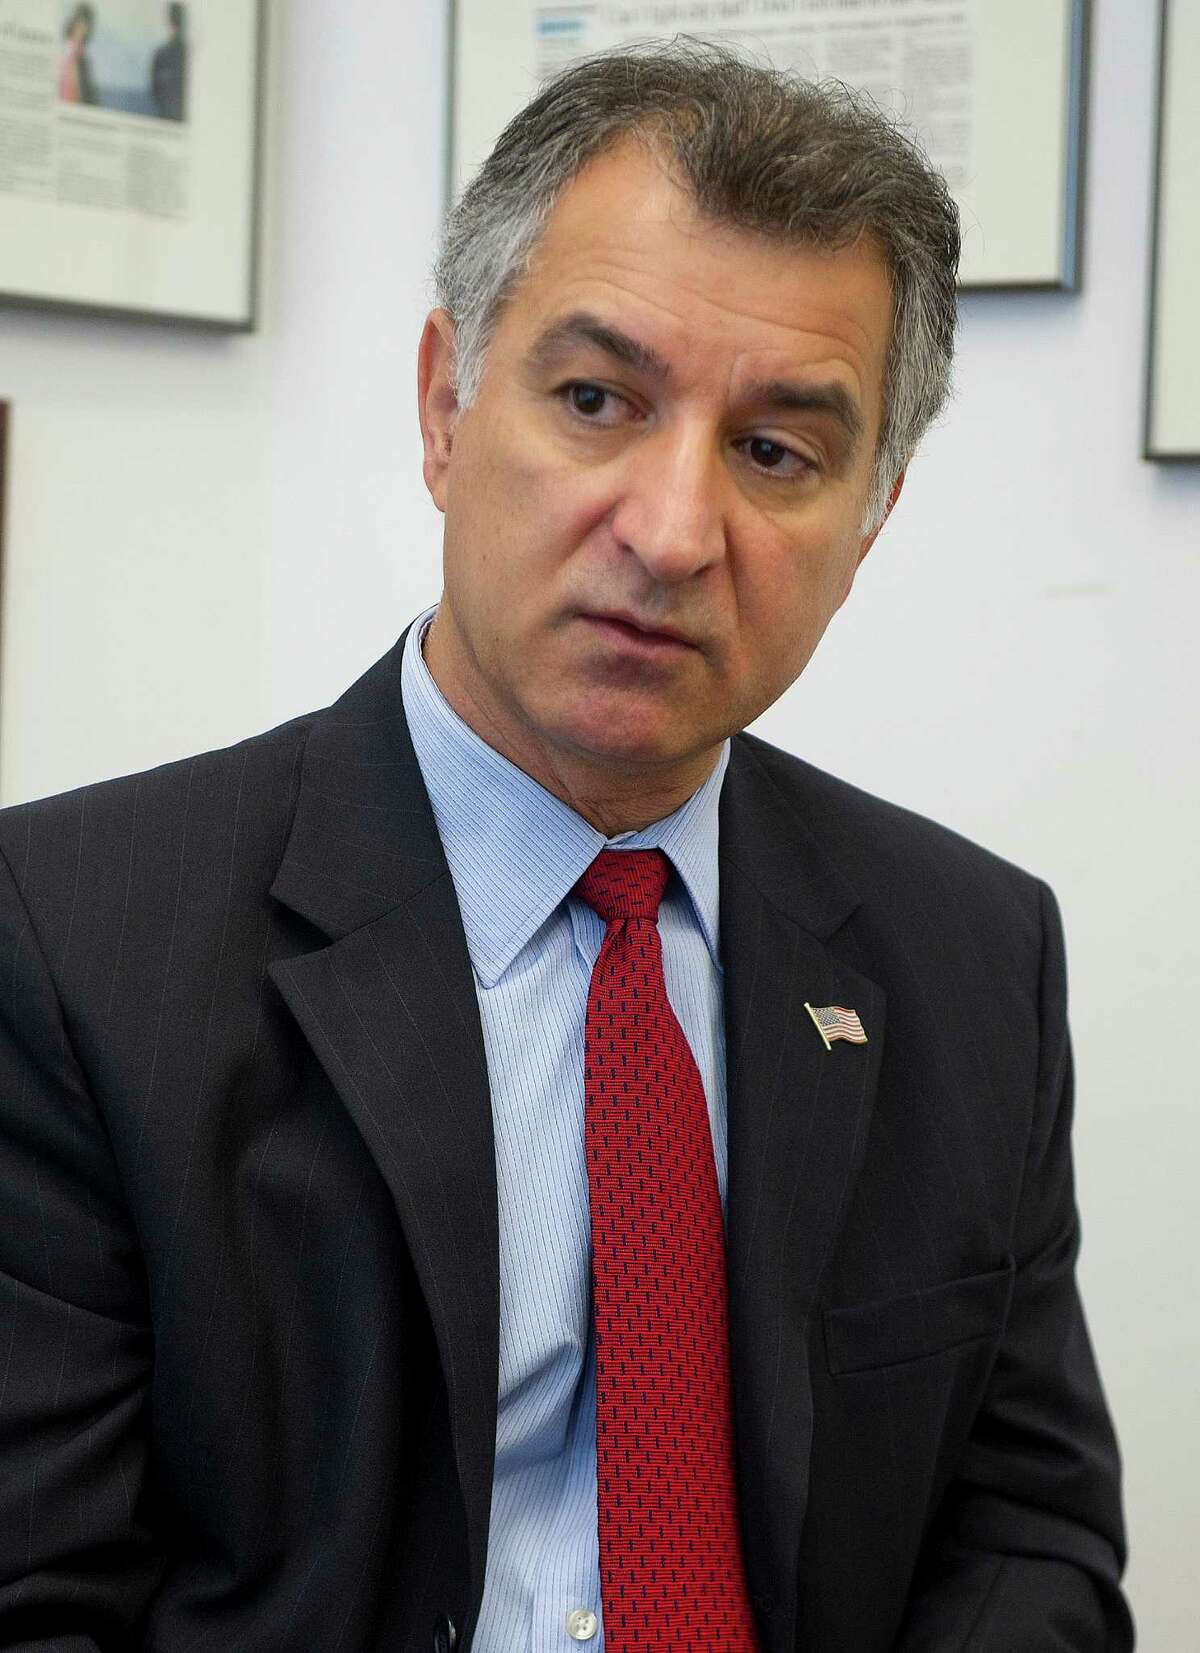 State Sen. Carlo Leone